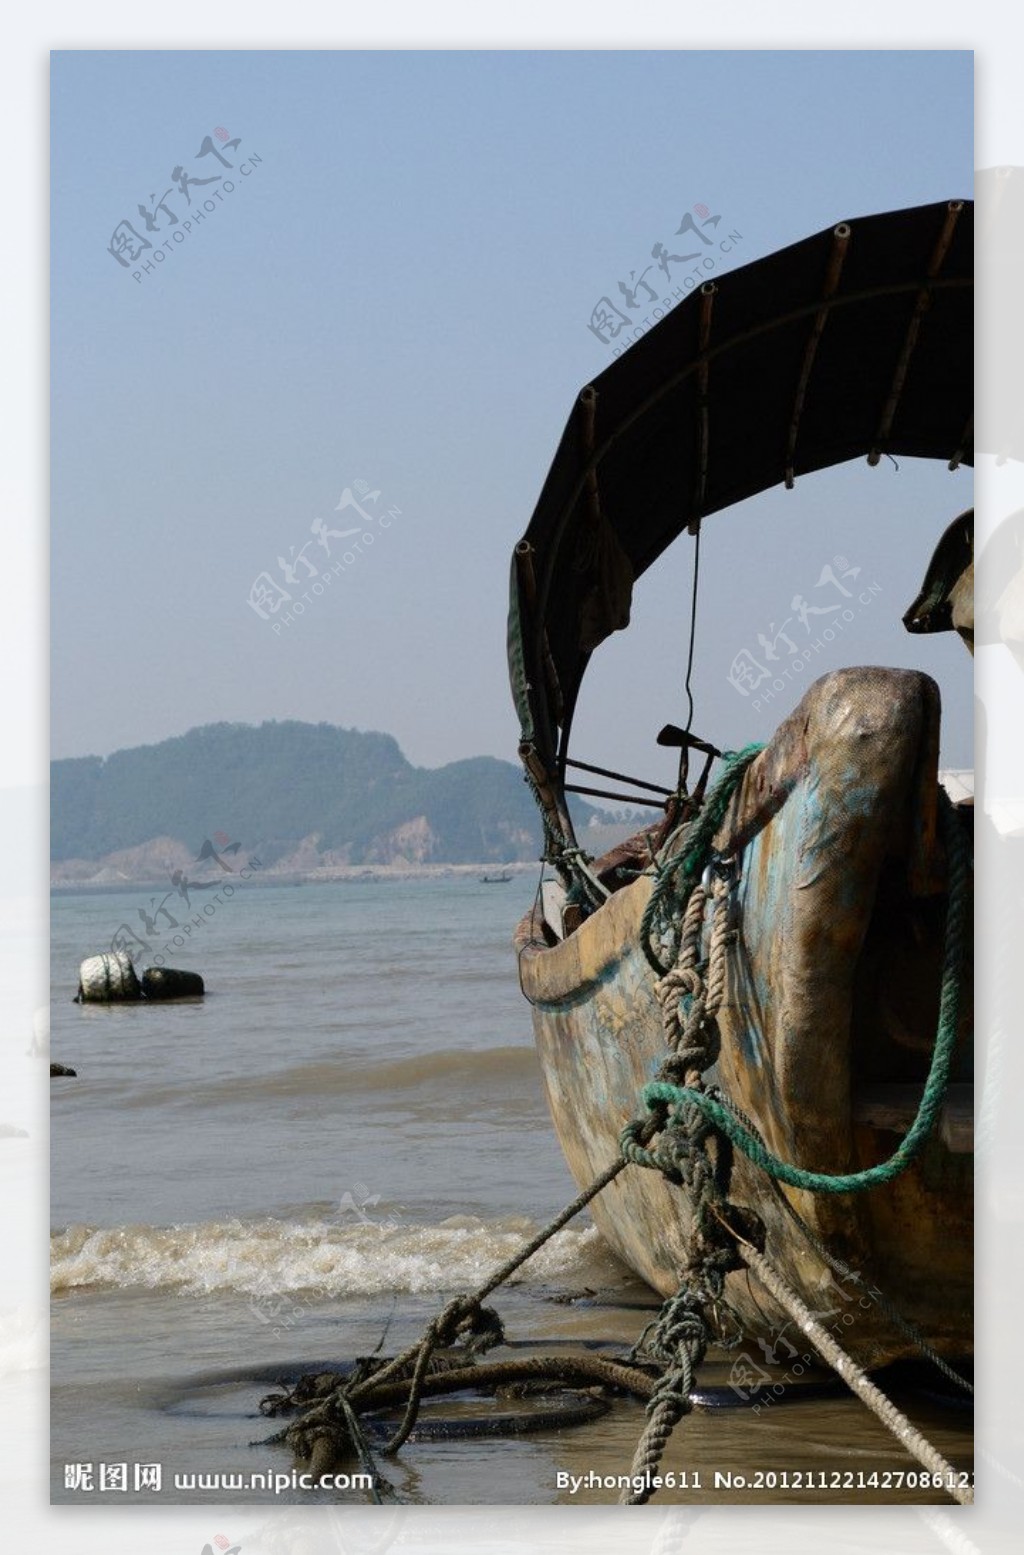 “泰利”来势汹汹 渔船归港避风-新闻中心-温州网